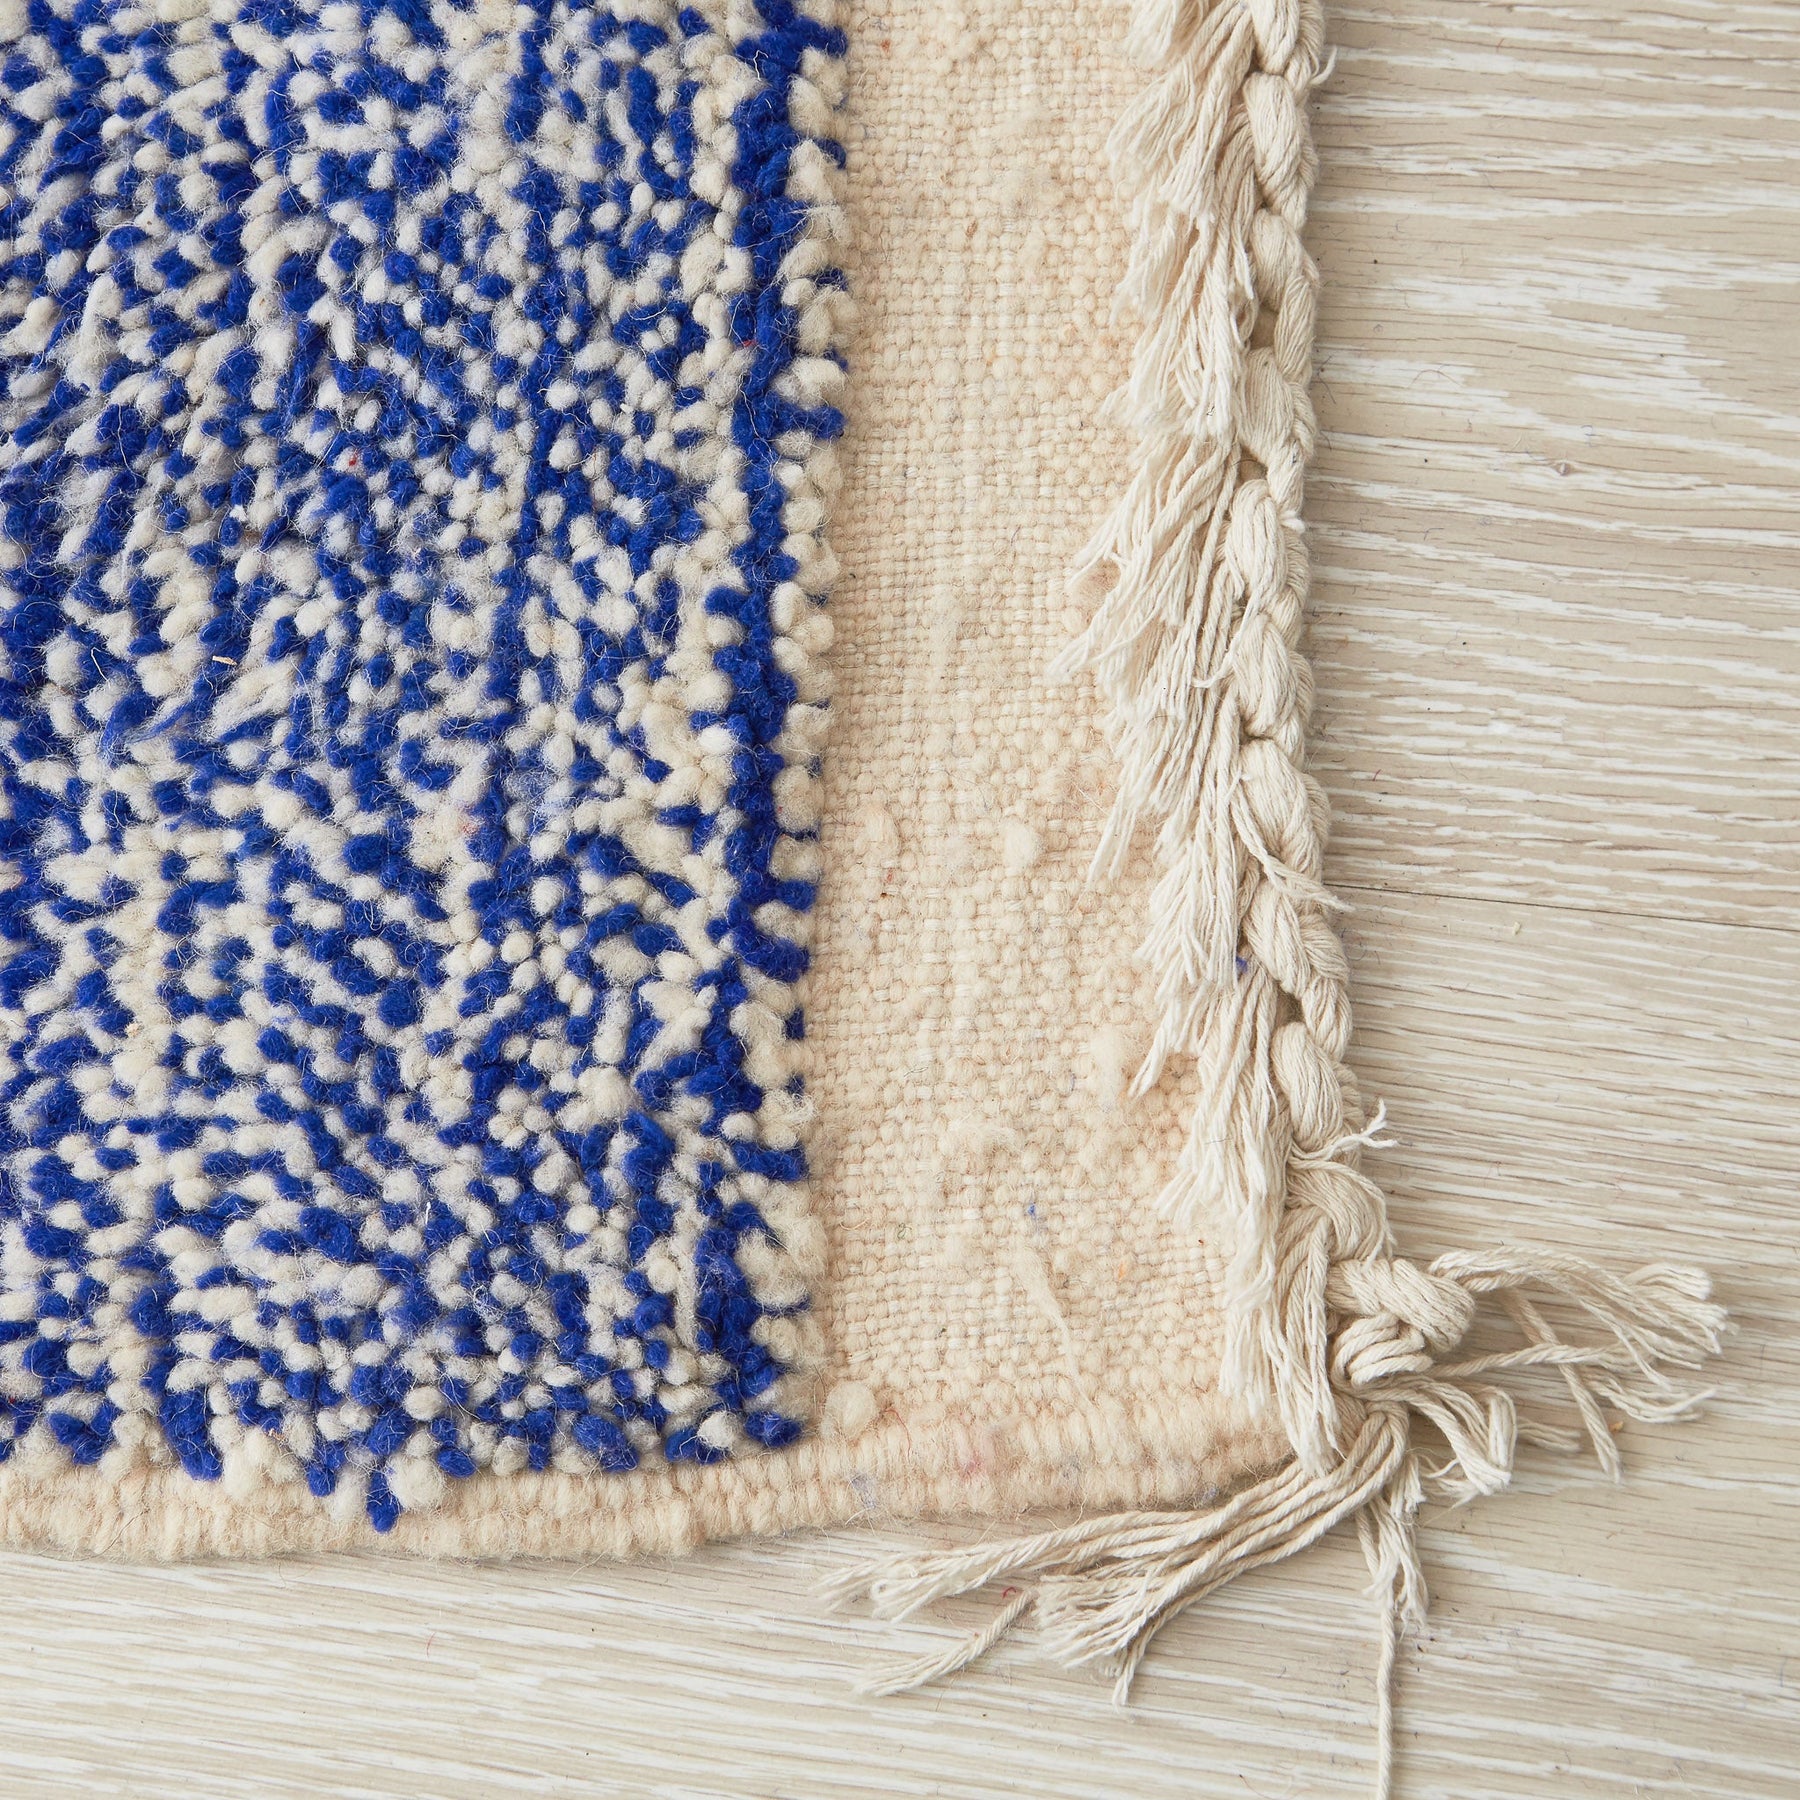 tappeto beni ourain a tinta unita con colore blu melange dettaglio della frangia bianca